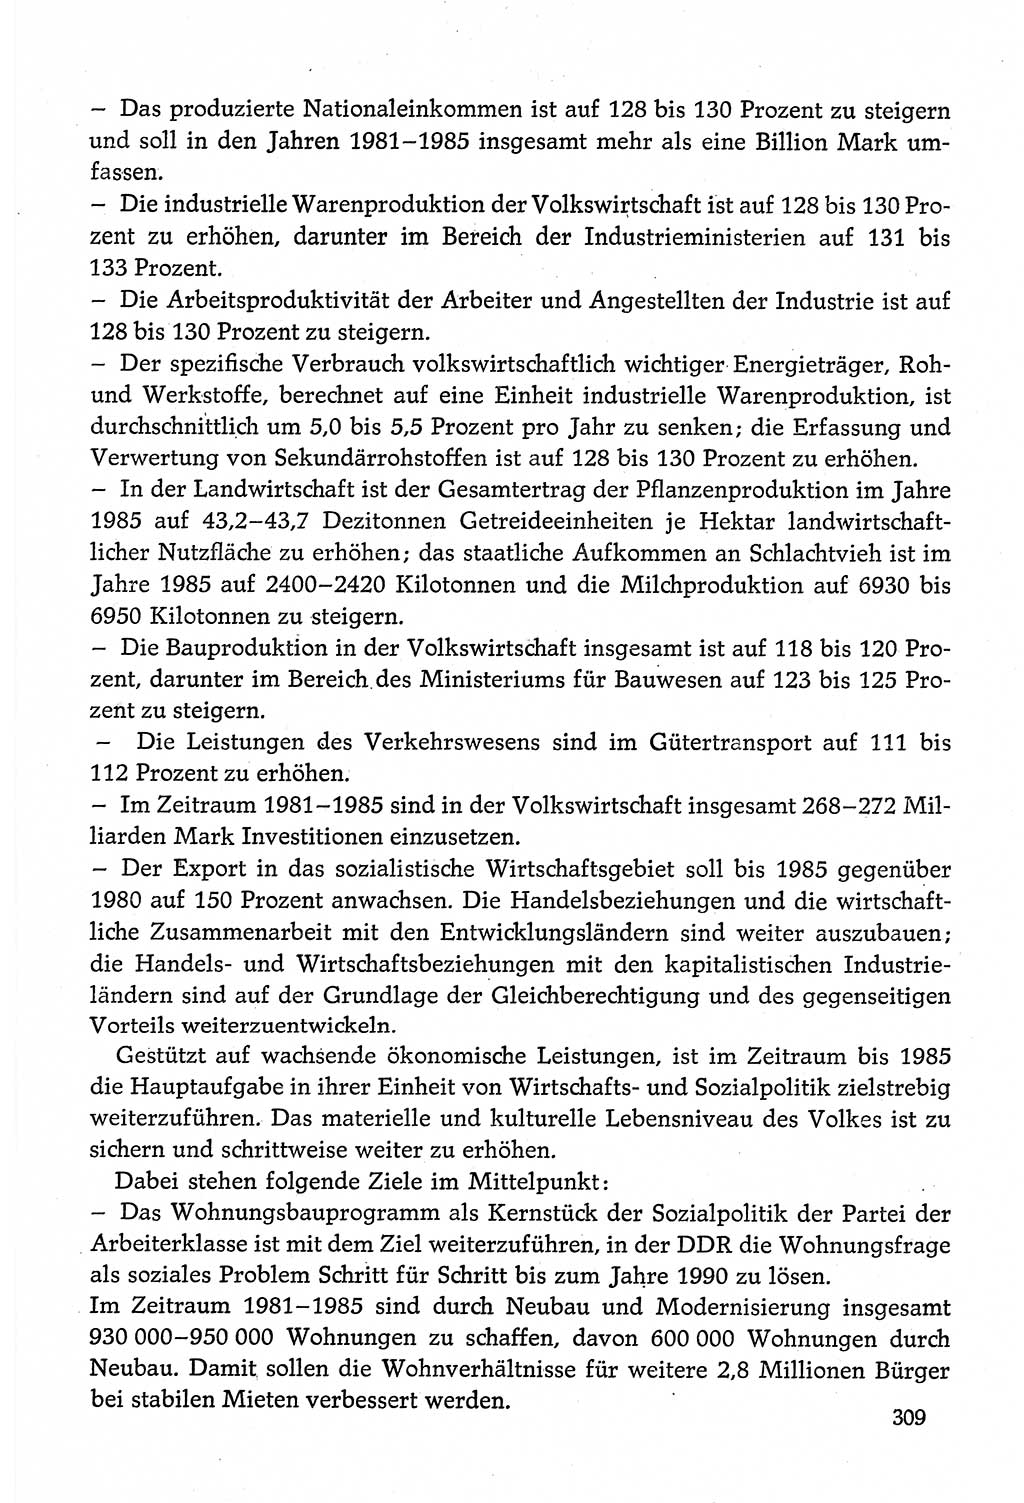 Dokumente der Sozialistischen Einheitspartei Deutschlands (SED) [Deutsche Demokratische Republik (DDR)] 1980-1981, Seite 309 (Dok. SED DDR 1980-1981, S. 309)